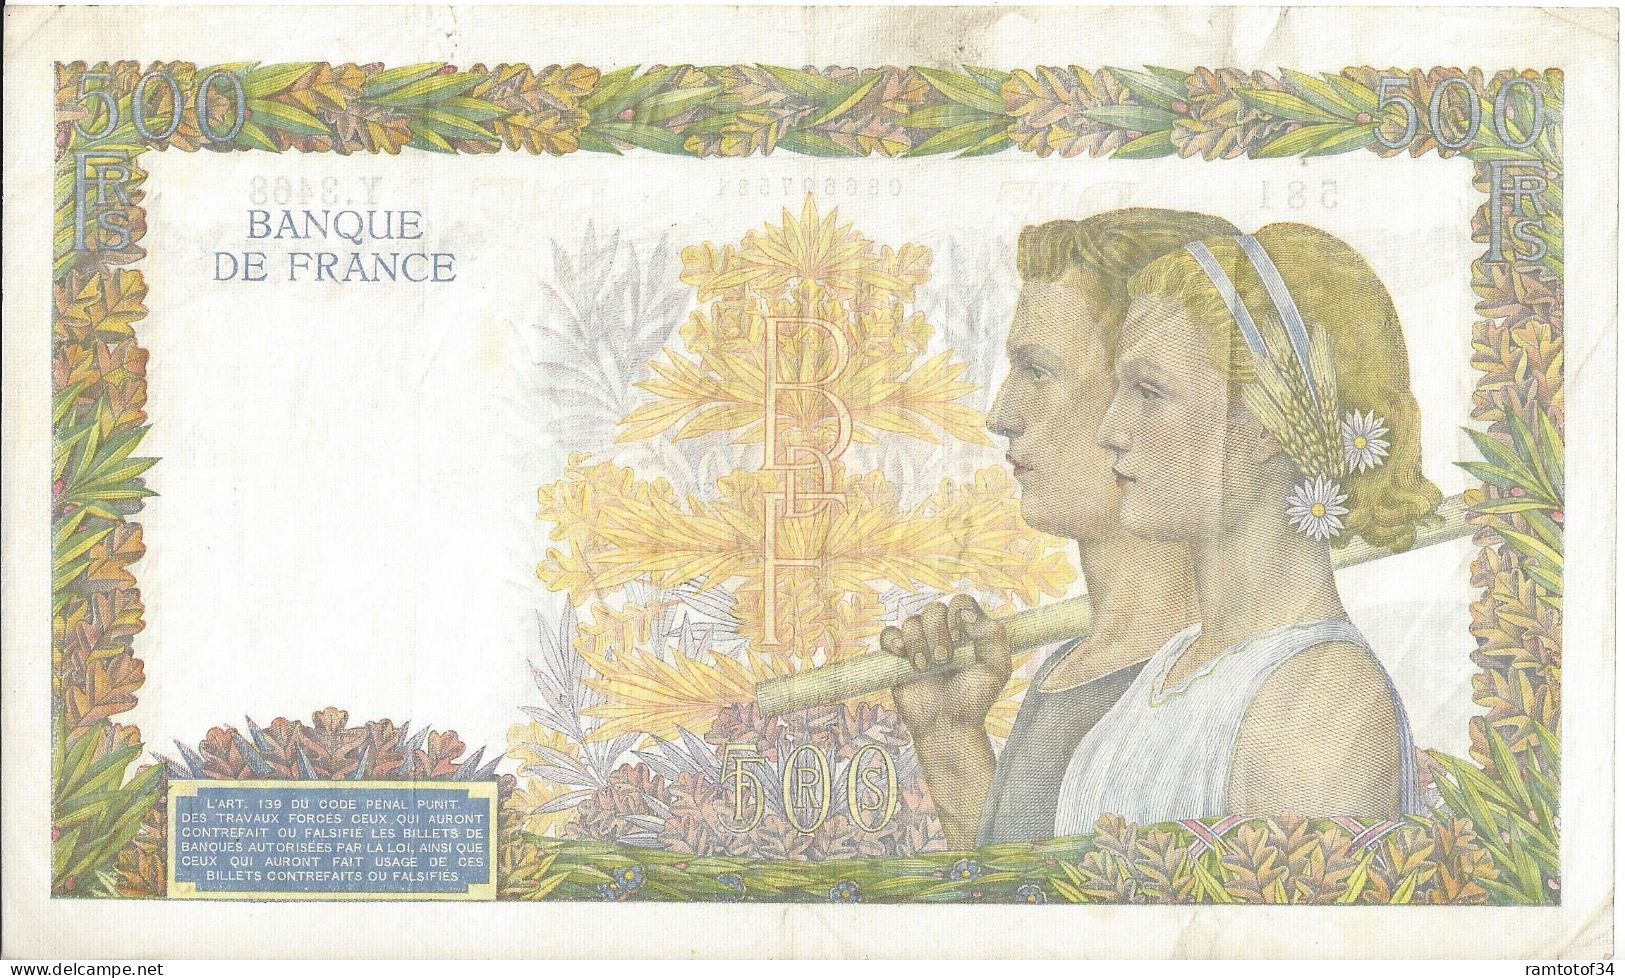 FRANCE - 500 Francs La Paix 31-7-1941 (Y.3468) - 500 F 1940-1944 ''La Paix''